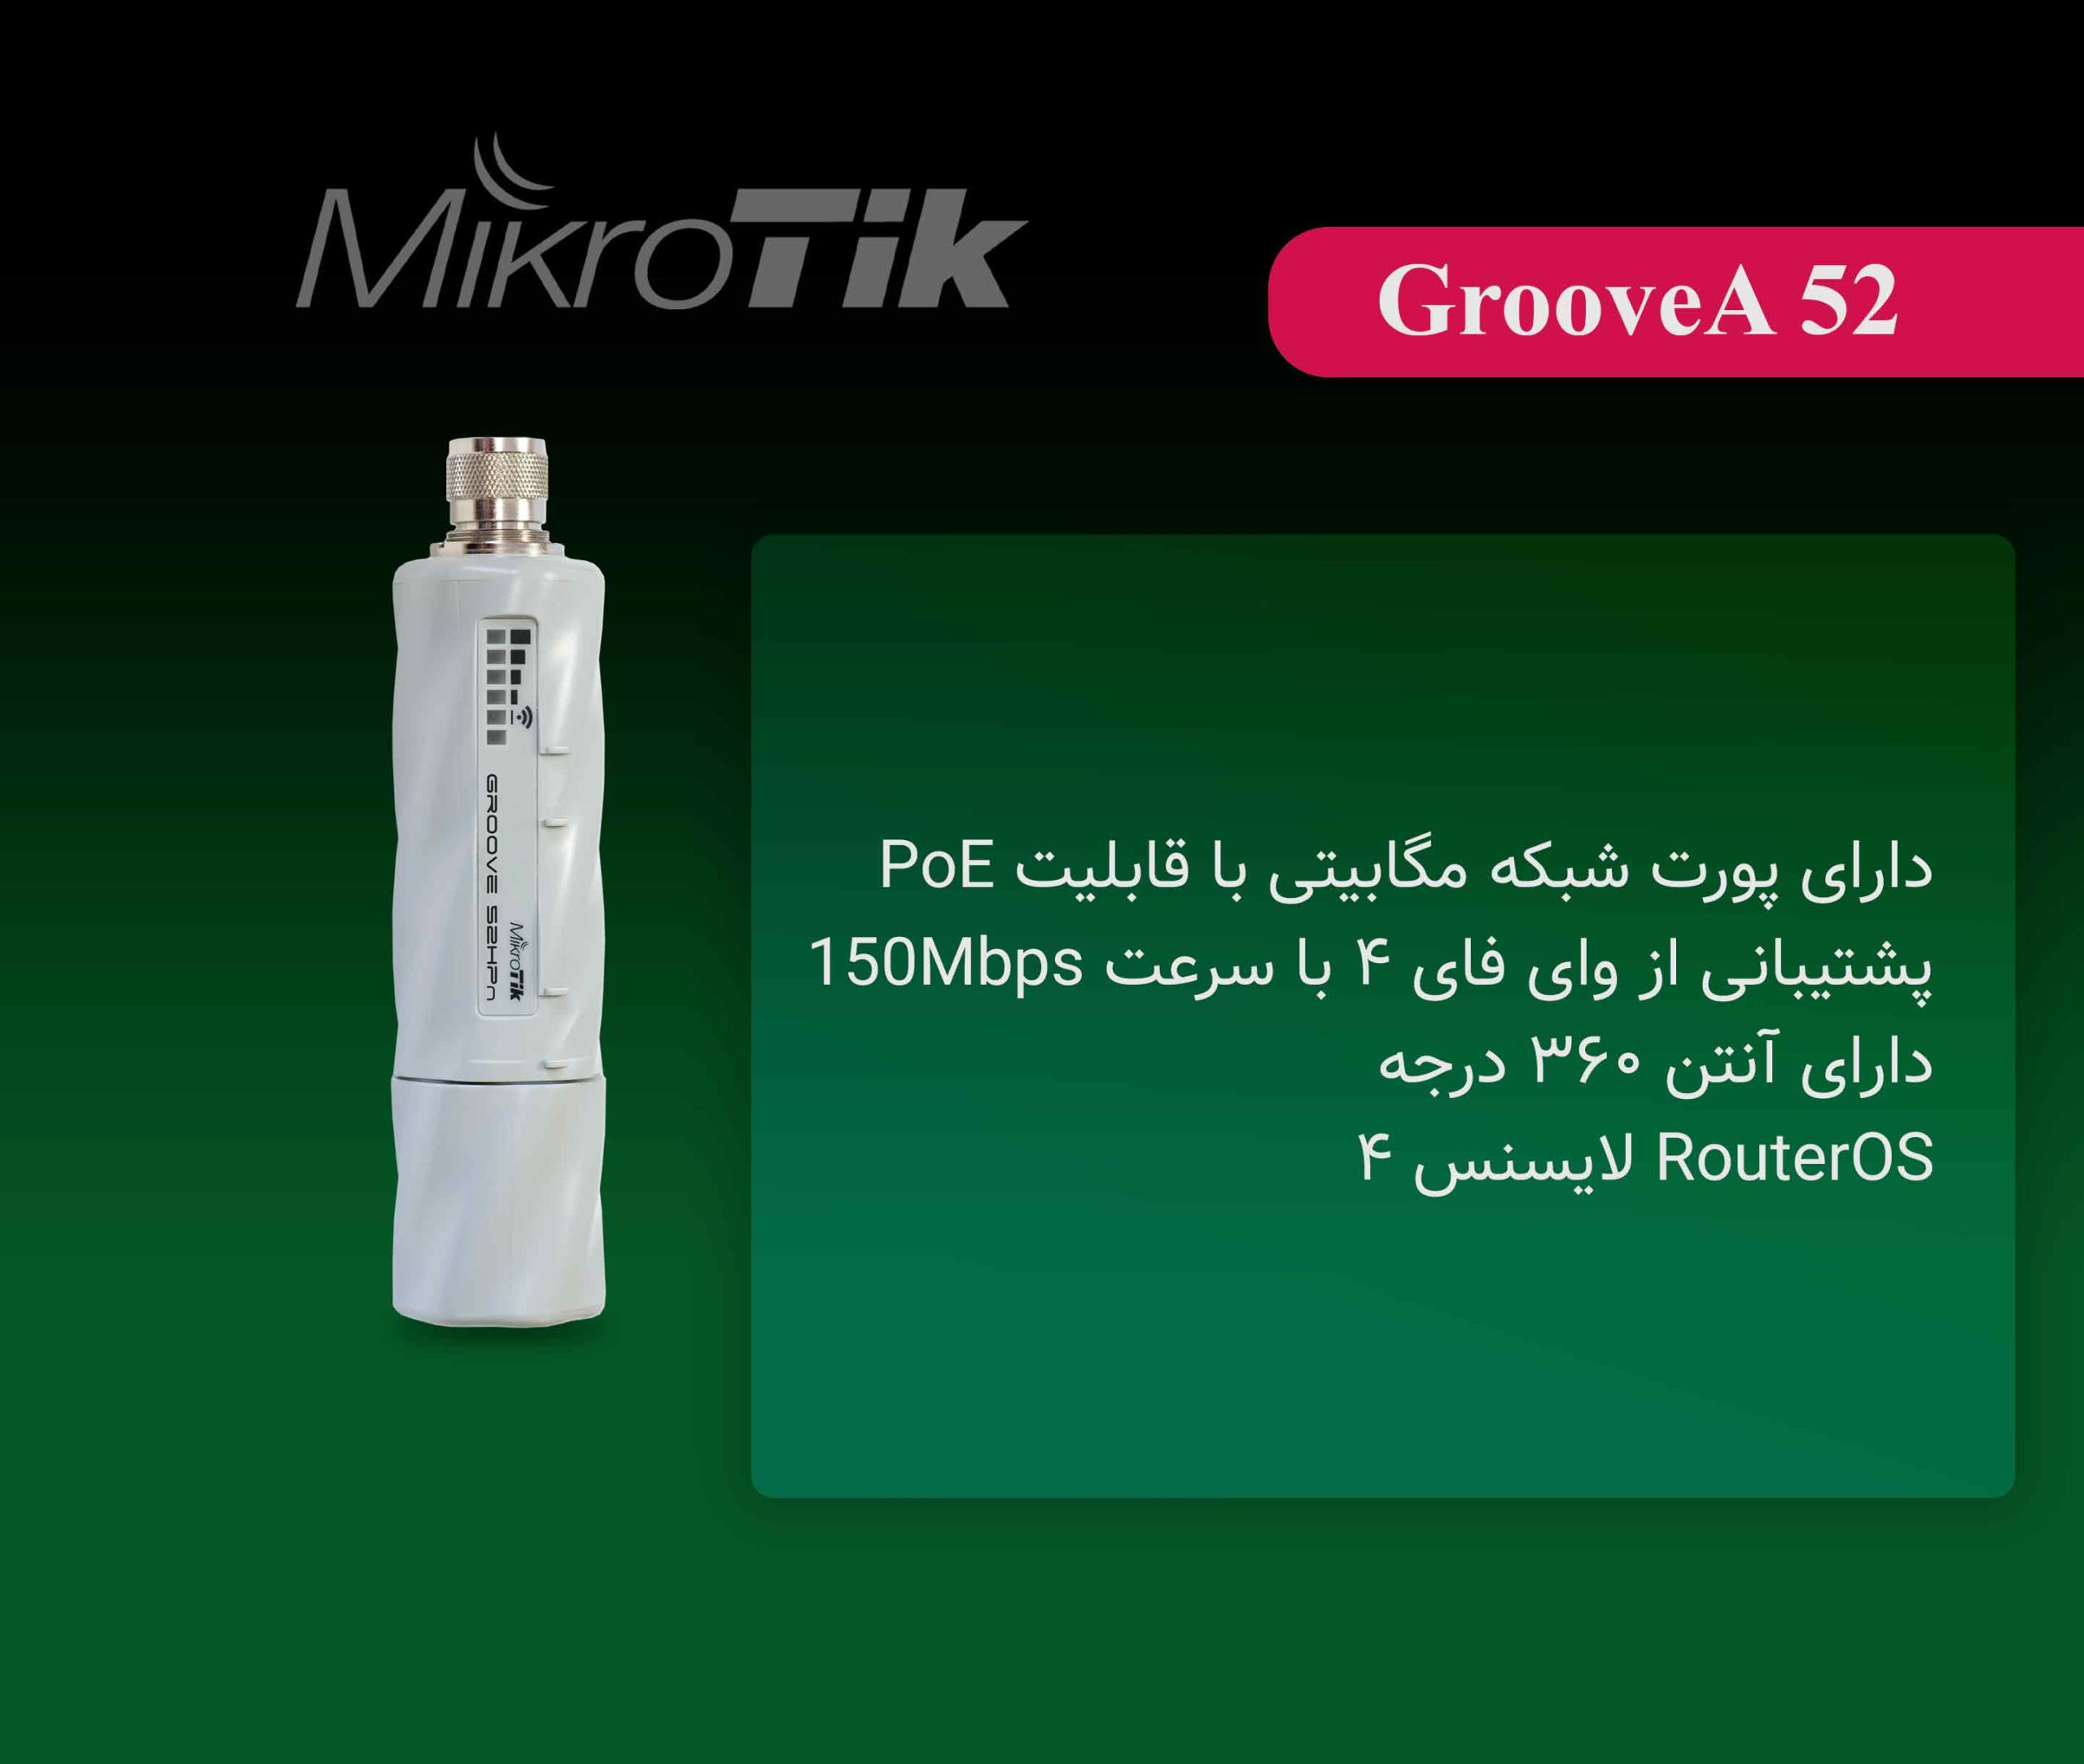 اکسس پوینت میکروتیک Mikrotik GrooveA 52 - شبکه ساز